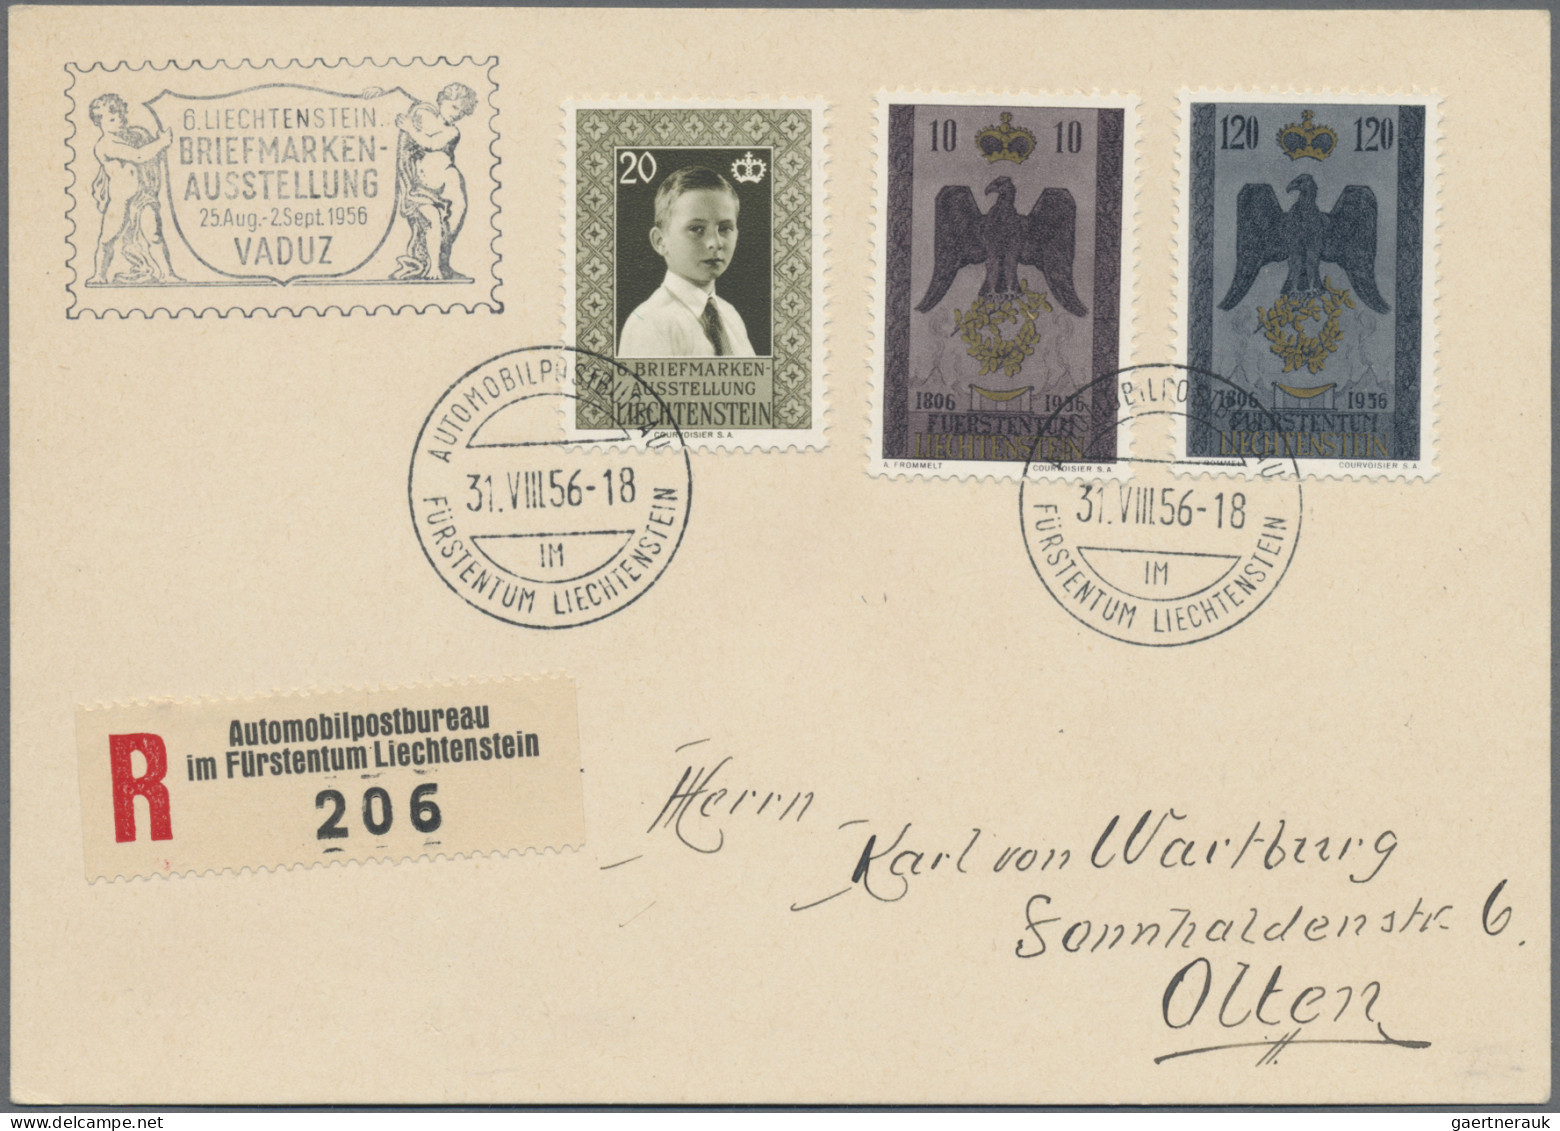 Liechtenstein: 1866/1980, umfangreiche Sammlung von ca. 720 Briefen und Karten a